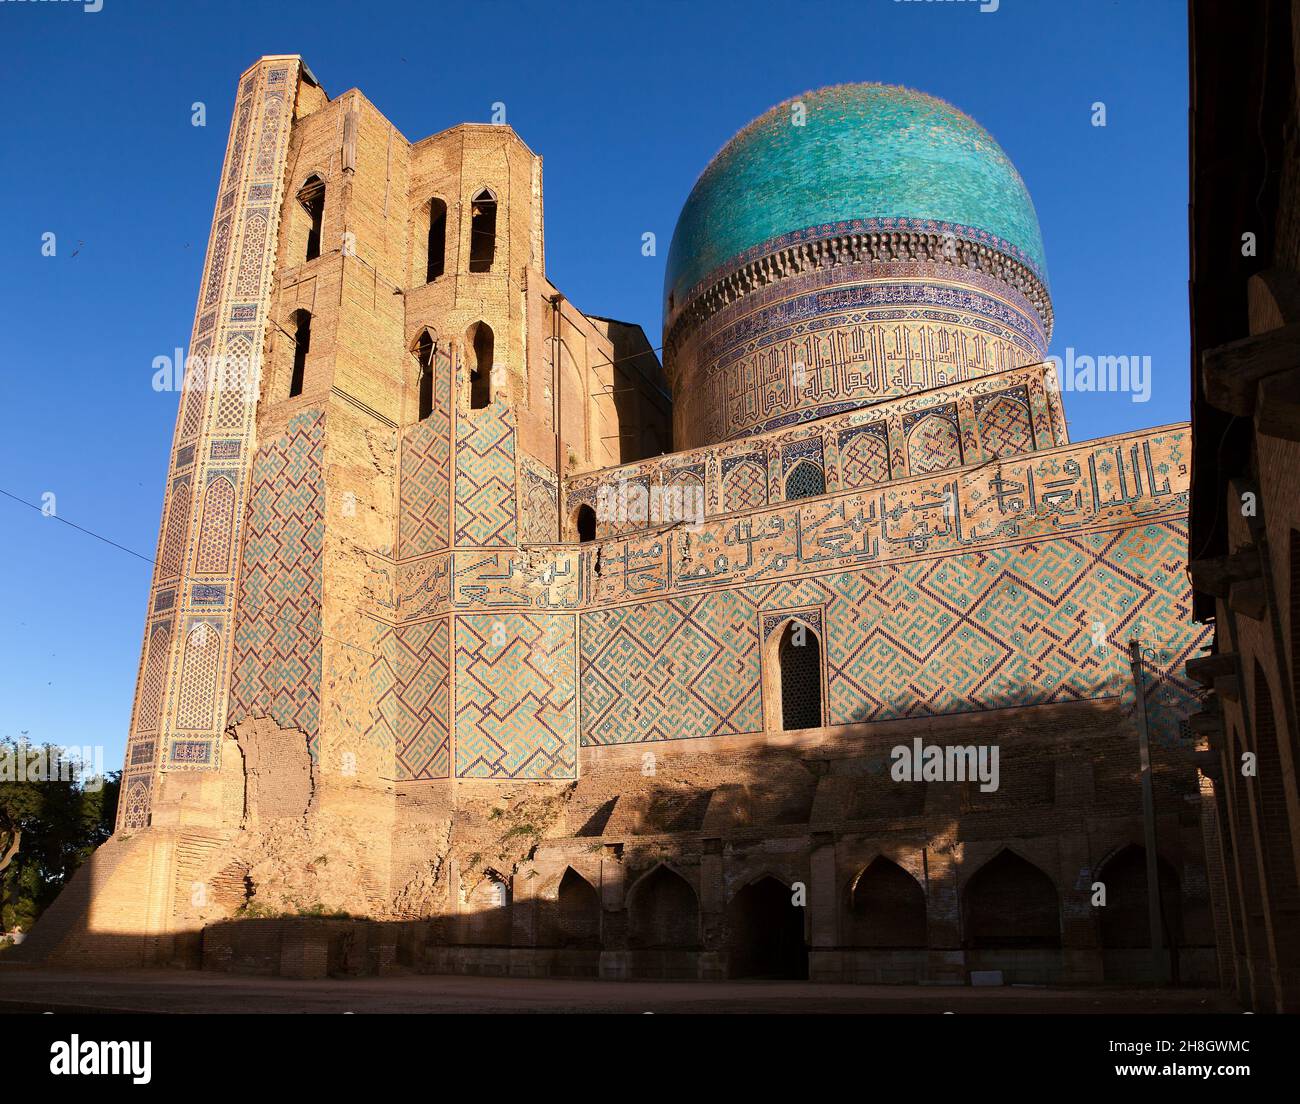 Evening view of Bibi-Khanym mosque - Registan - Samarkand - Uzbekistan Stock Photo